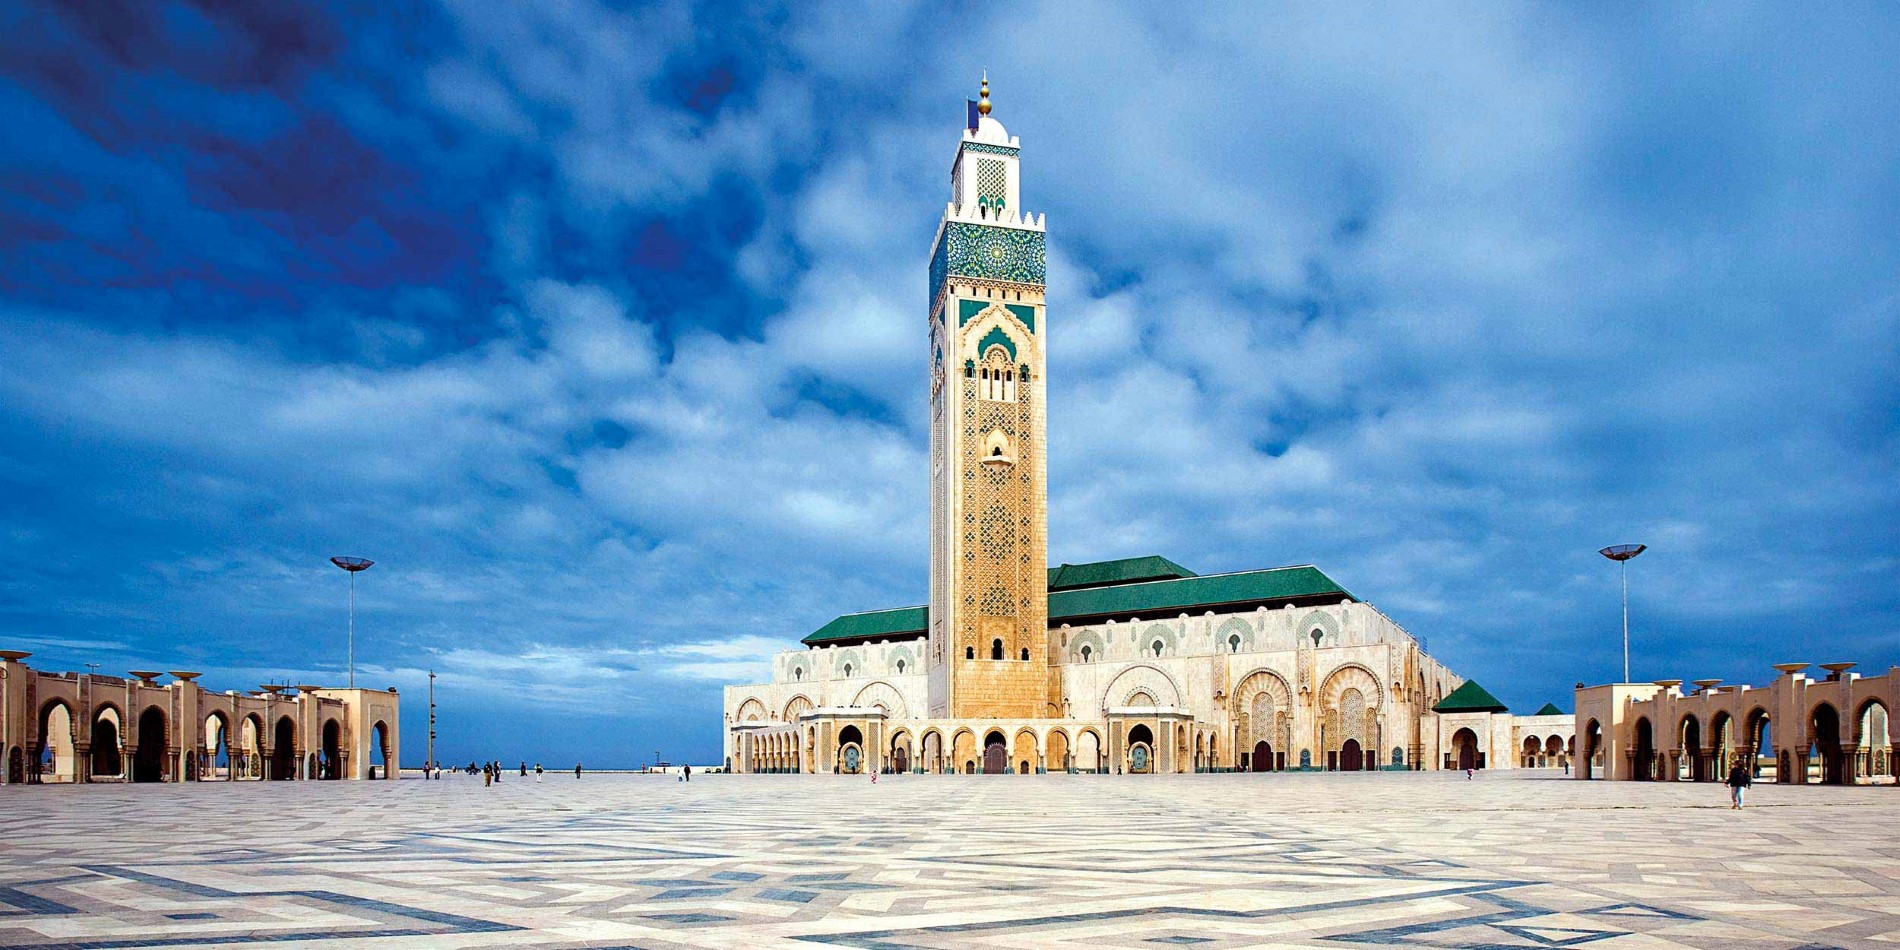 The Mosque of Hassan II in Casablanca